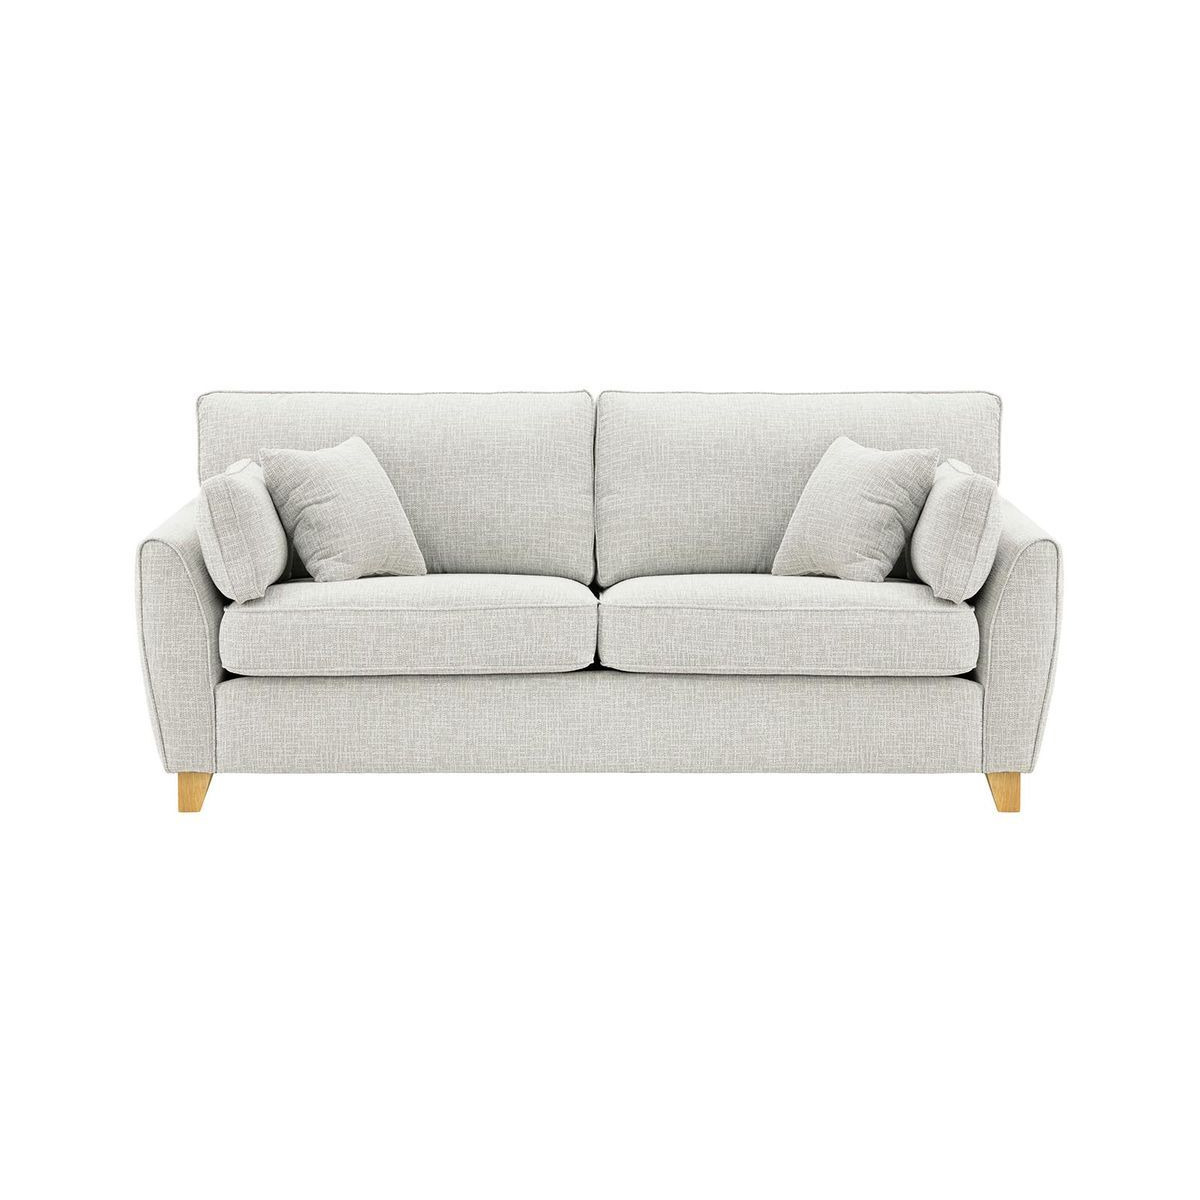 James 3 Seater Sofa, silver, Leg colour: white - image 1